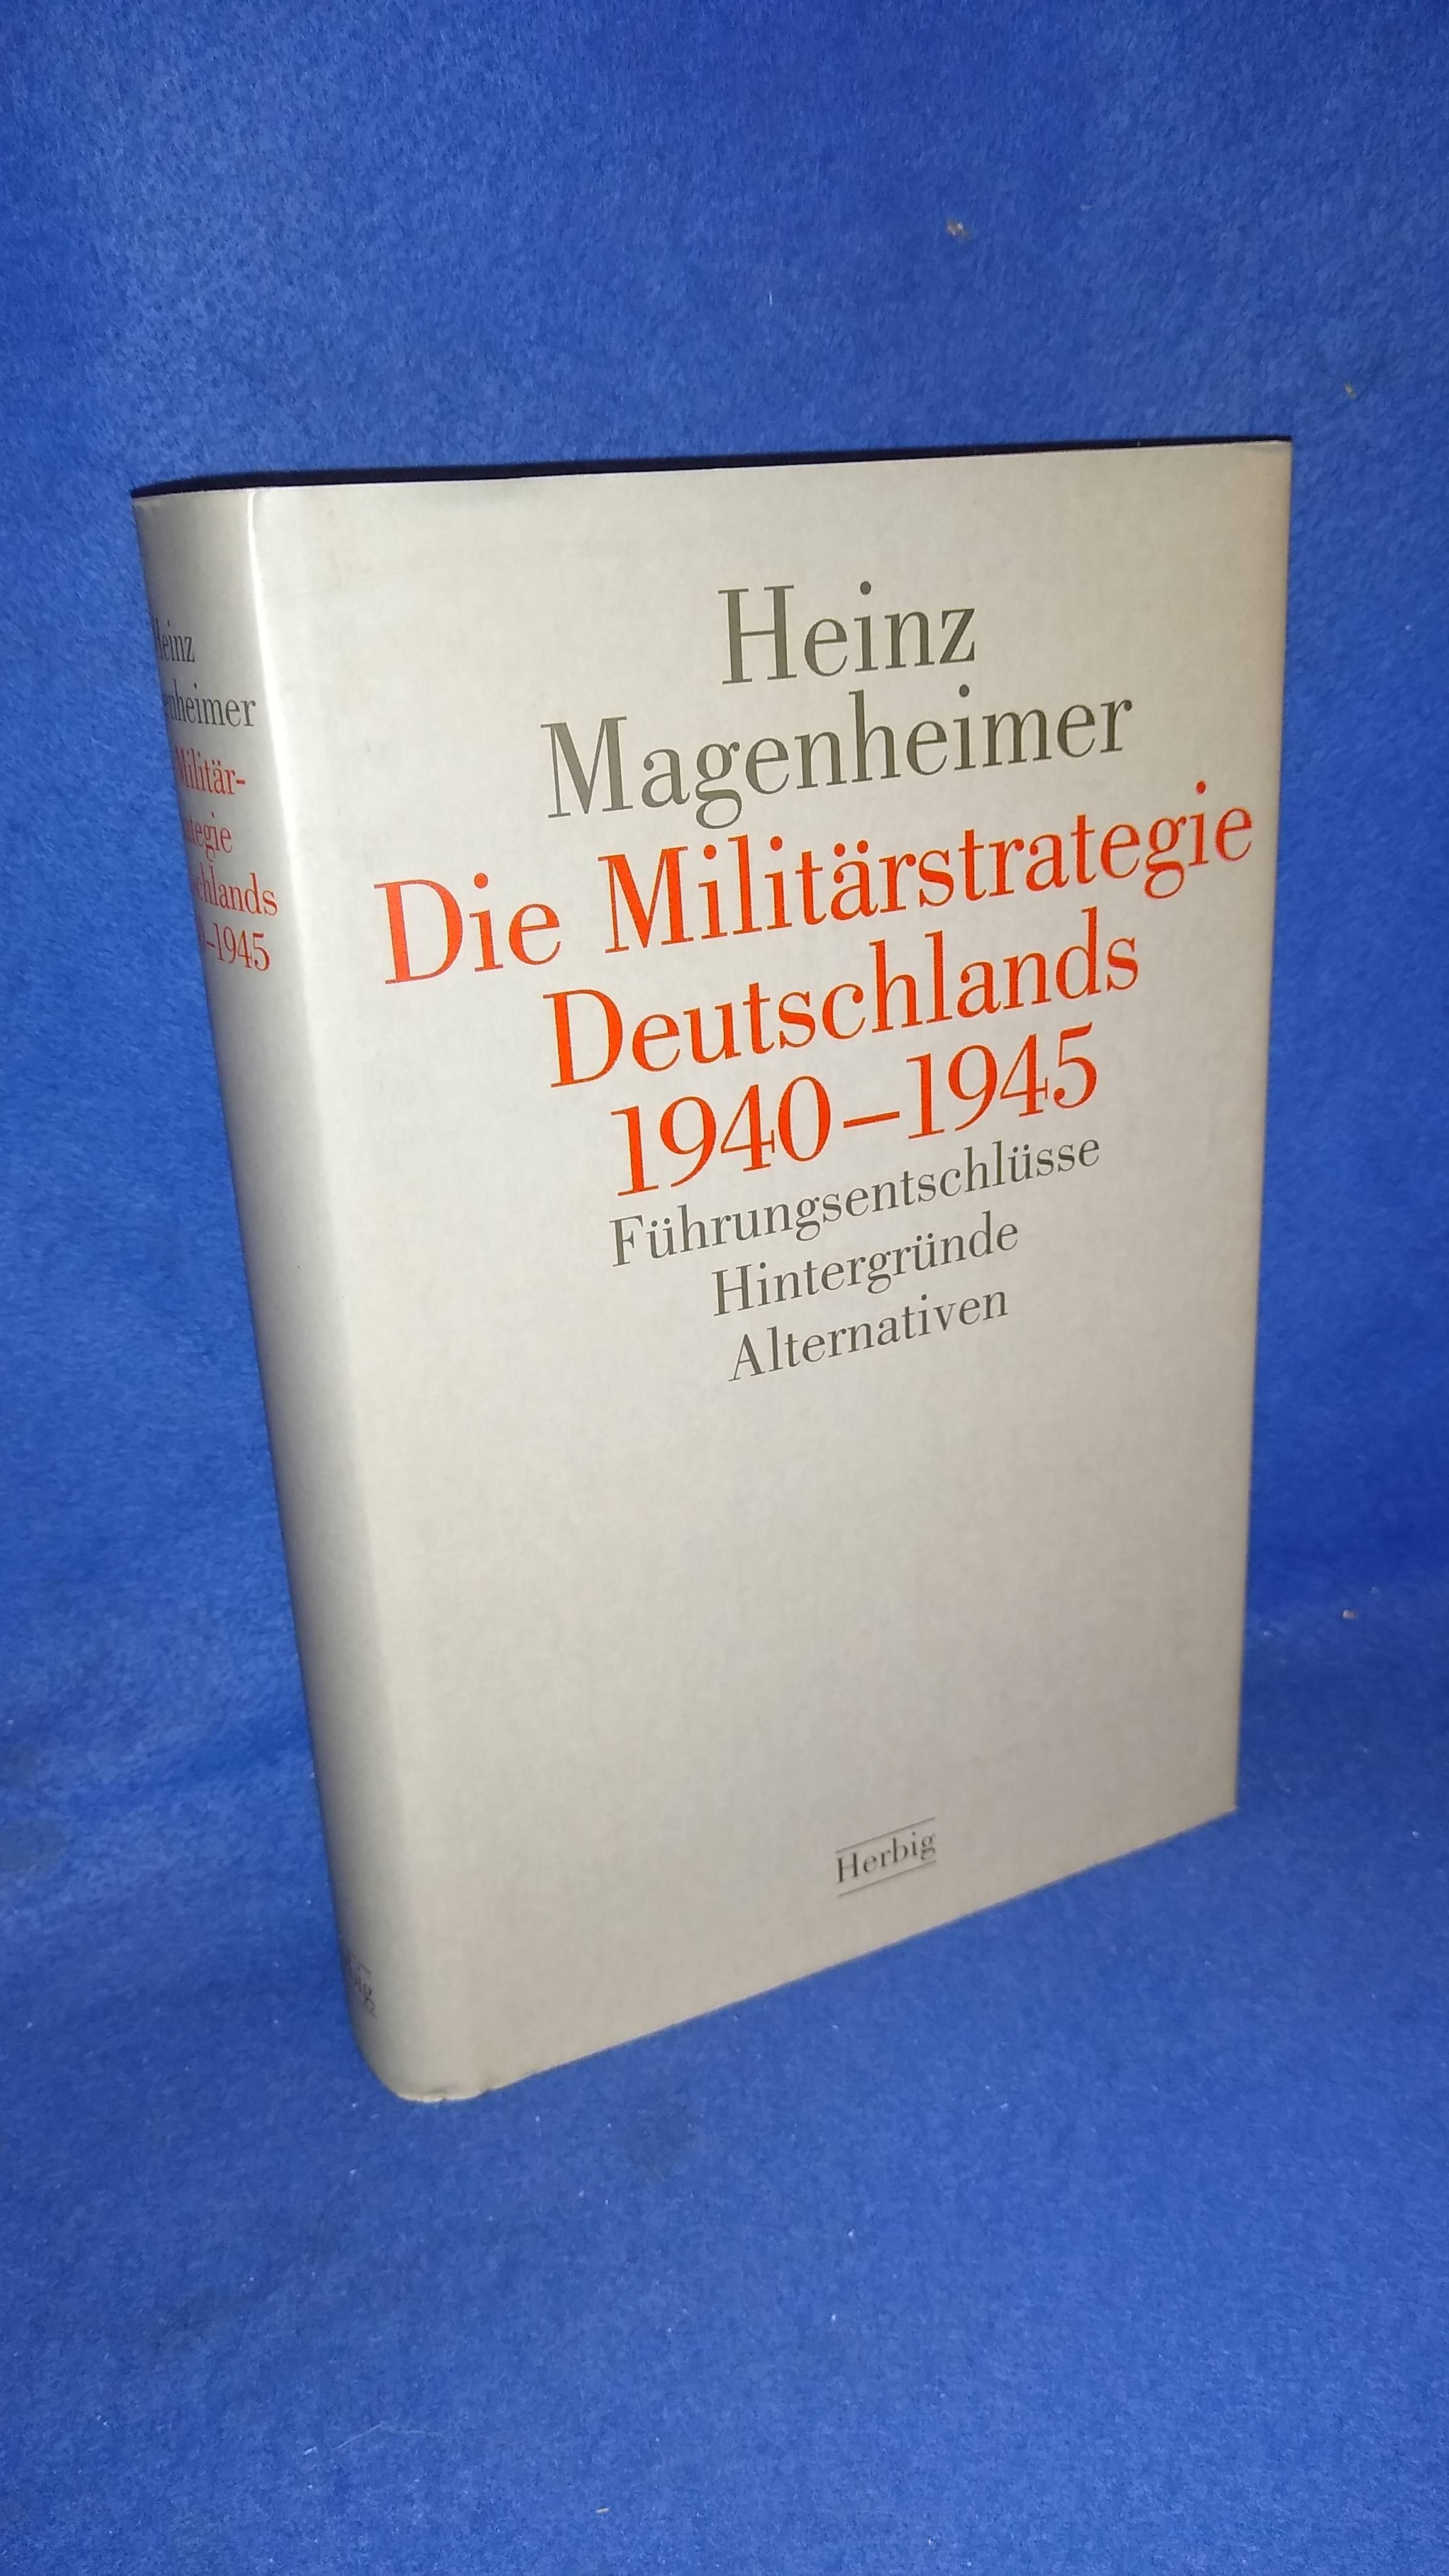 Die Militärstrategie Deutschlands 1940-1945. Führungsentschlüsse, Hintergründe, Alternativen.